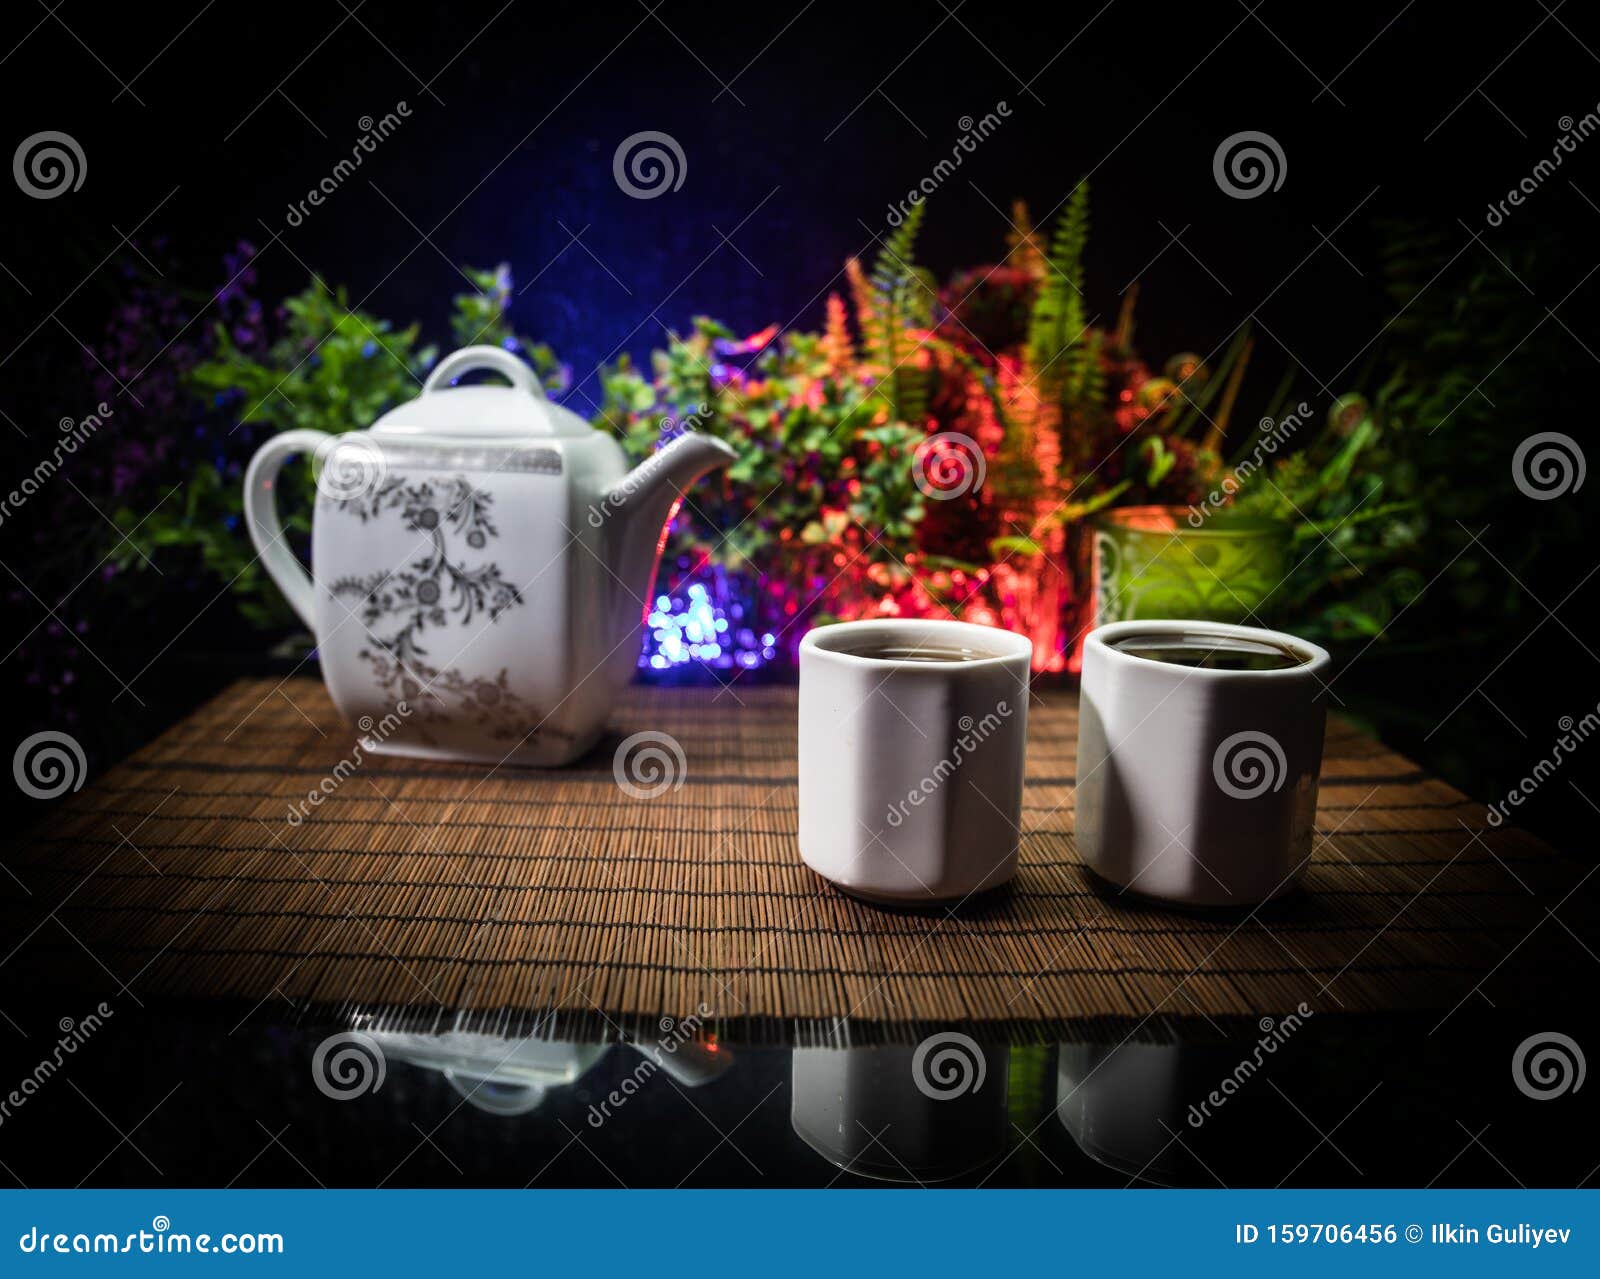 Jogo de chá asiático bule e xícaras japoneses em uma bandeja de bambu